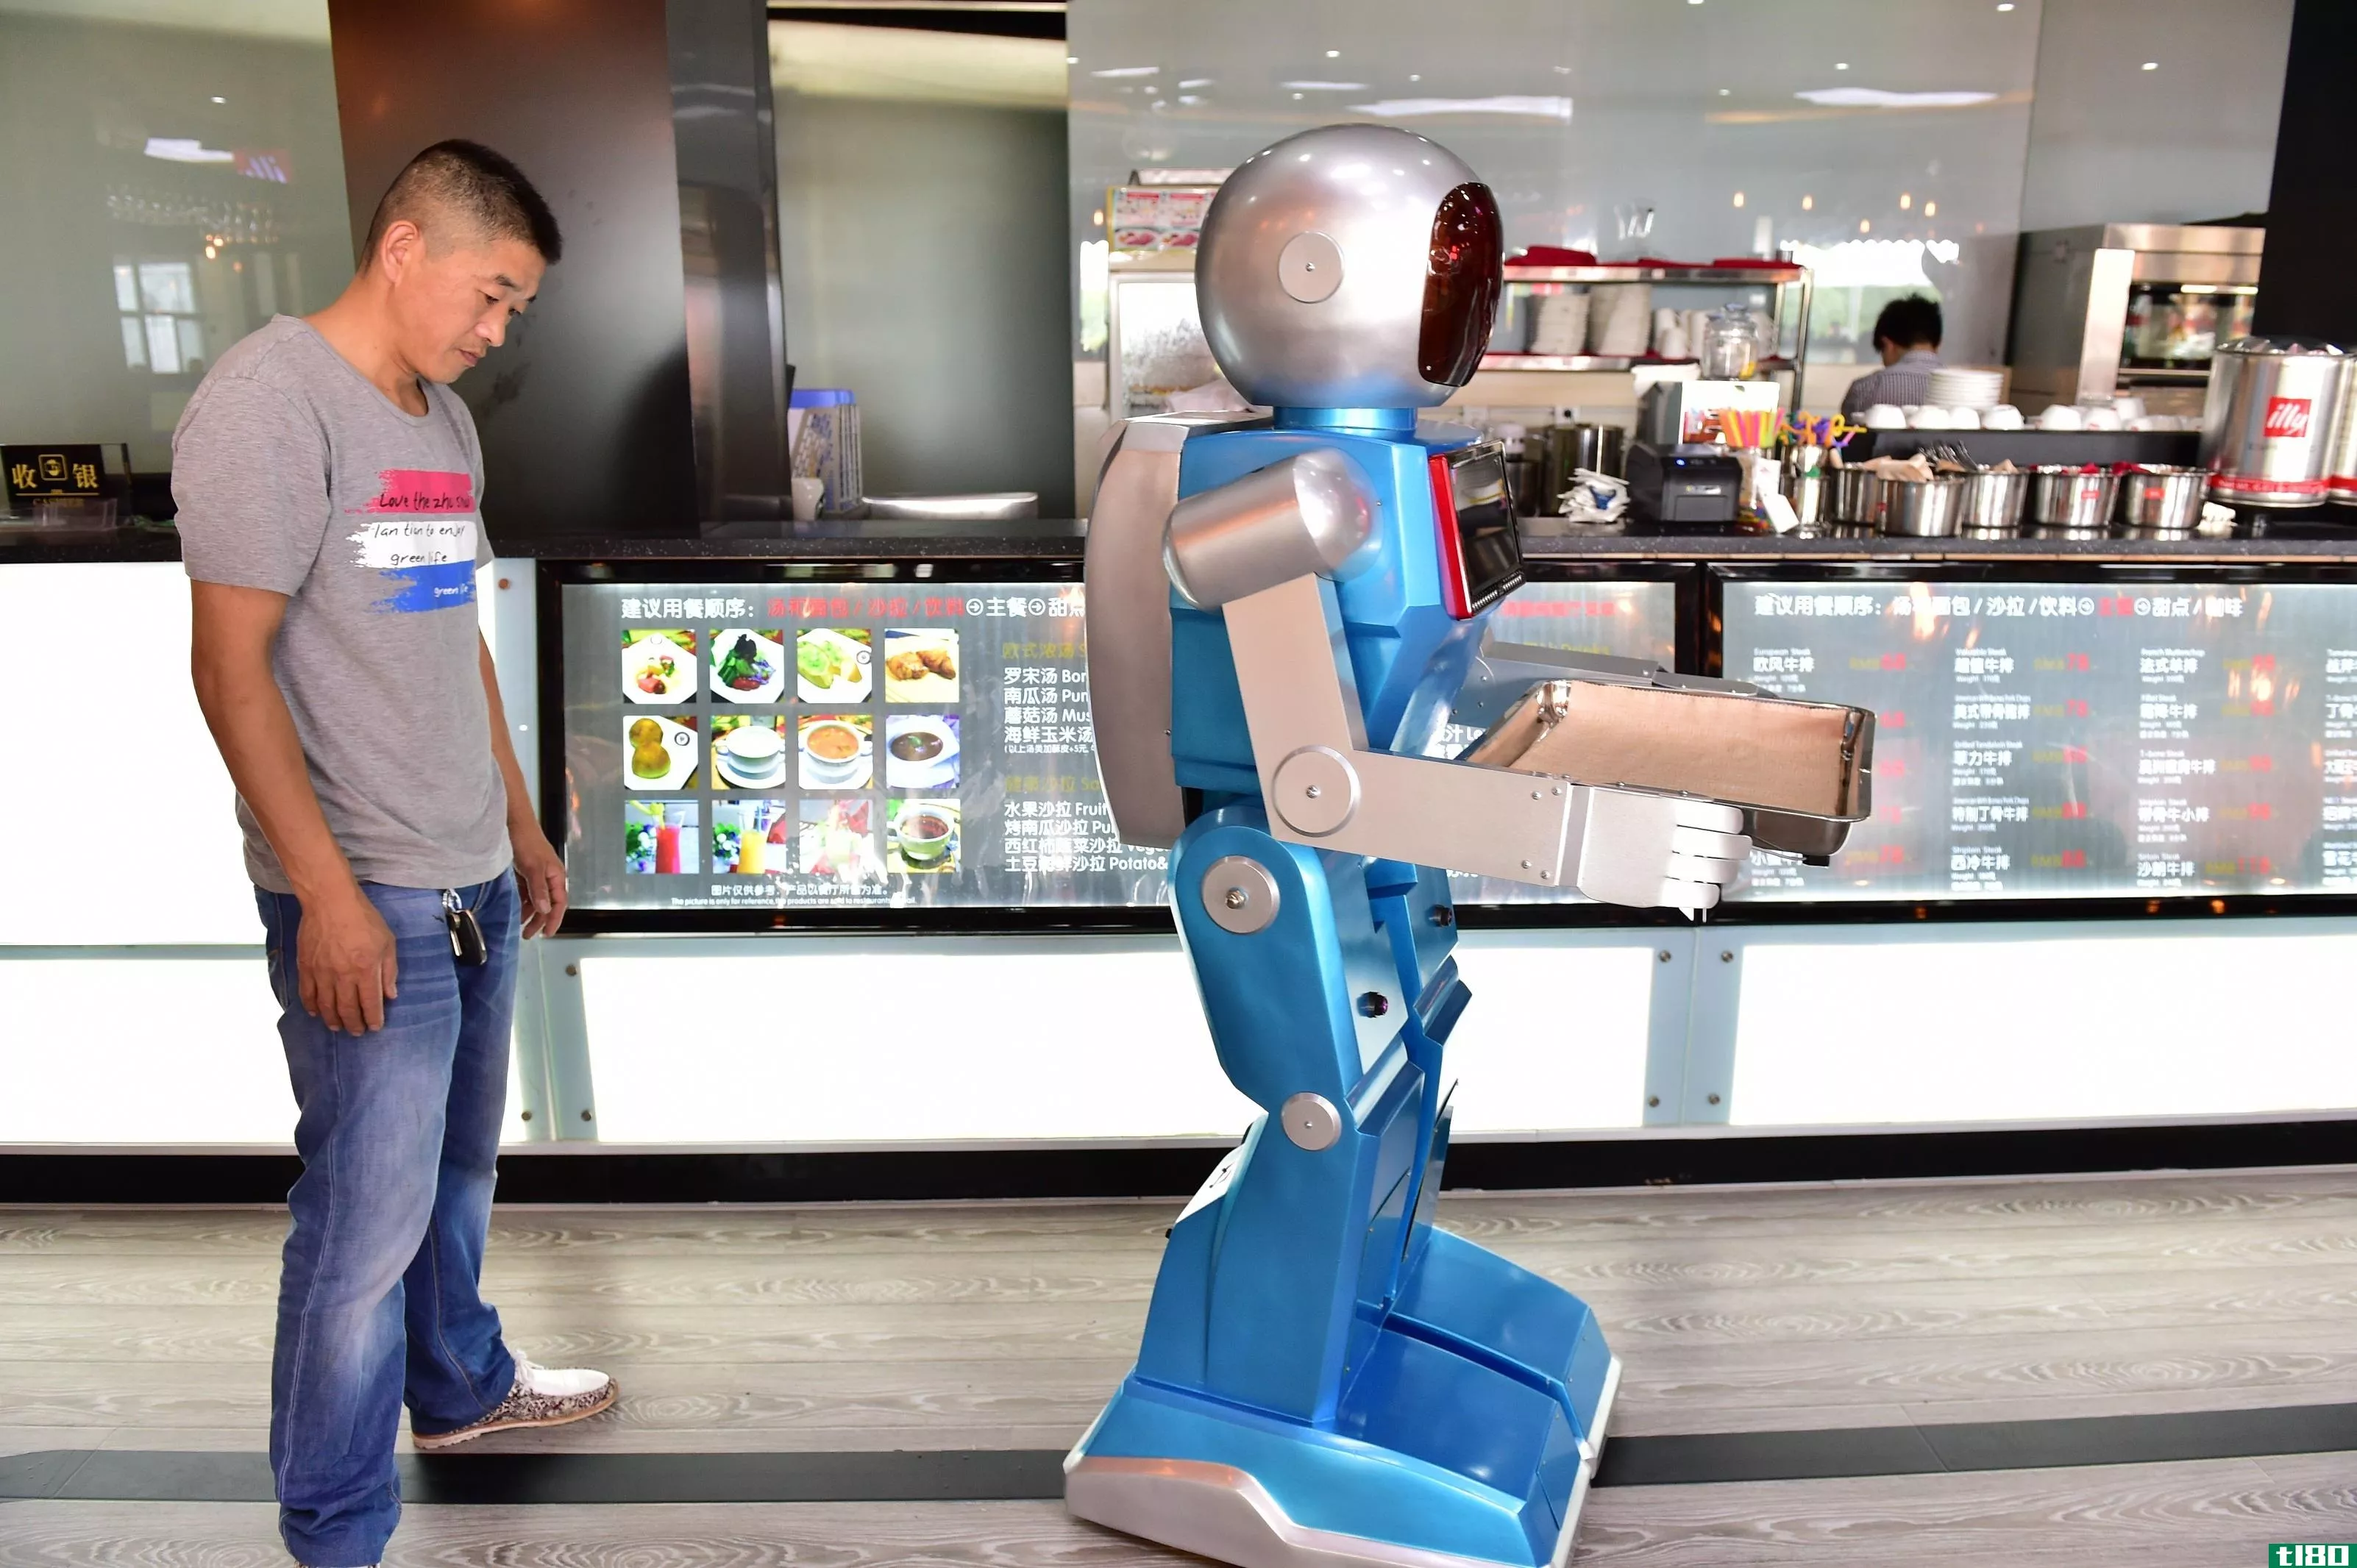 无用的机器人服务员迫使中国两家餐馆关门